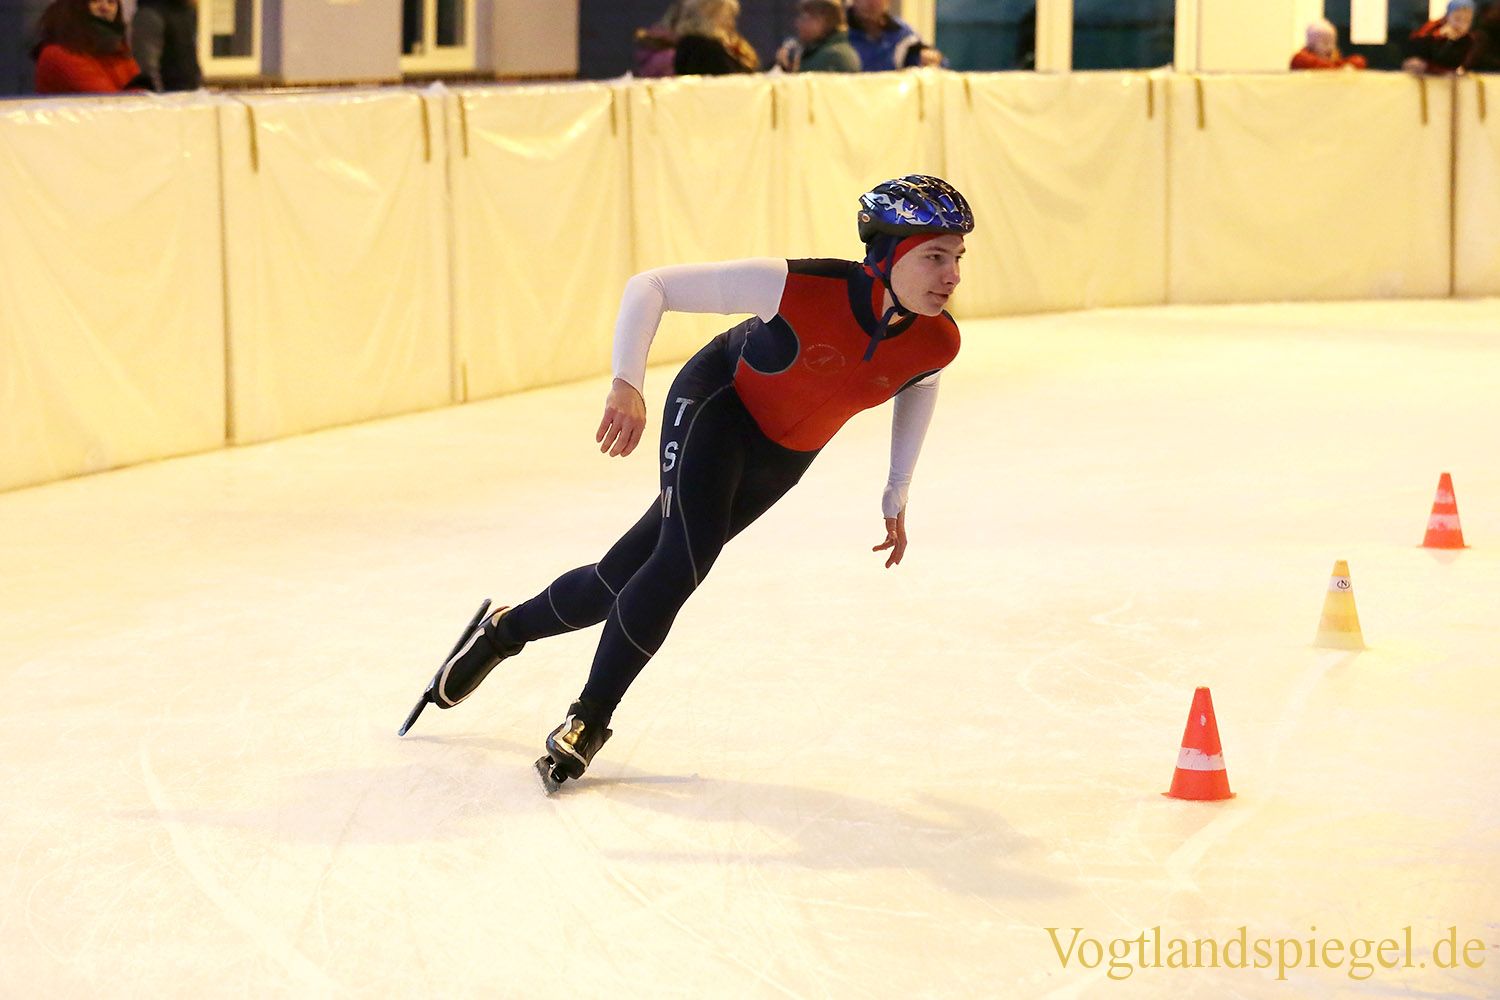 Eissportfläche Greiz: 10. Vogtlandspiele im Eiskunst-und Eisschnelllauf